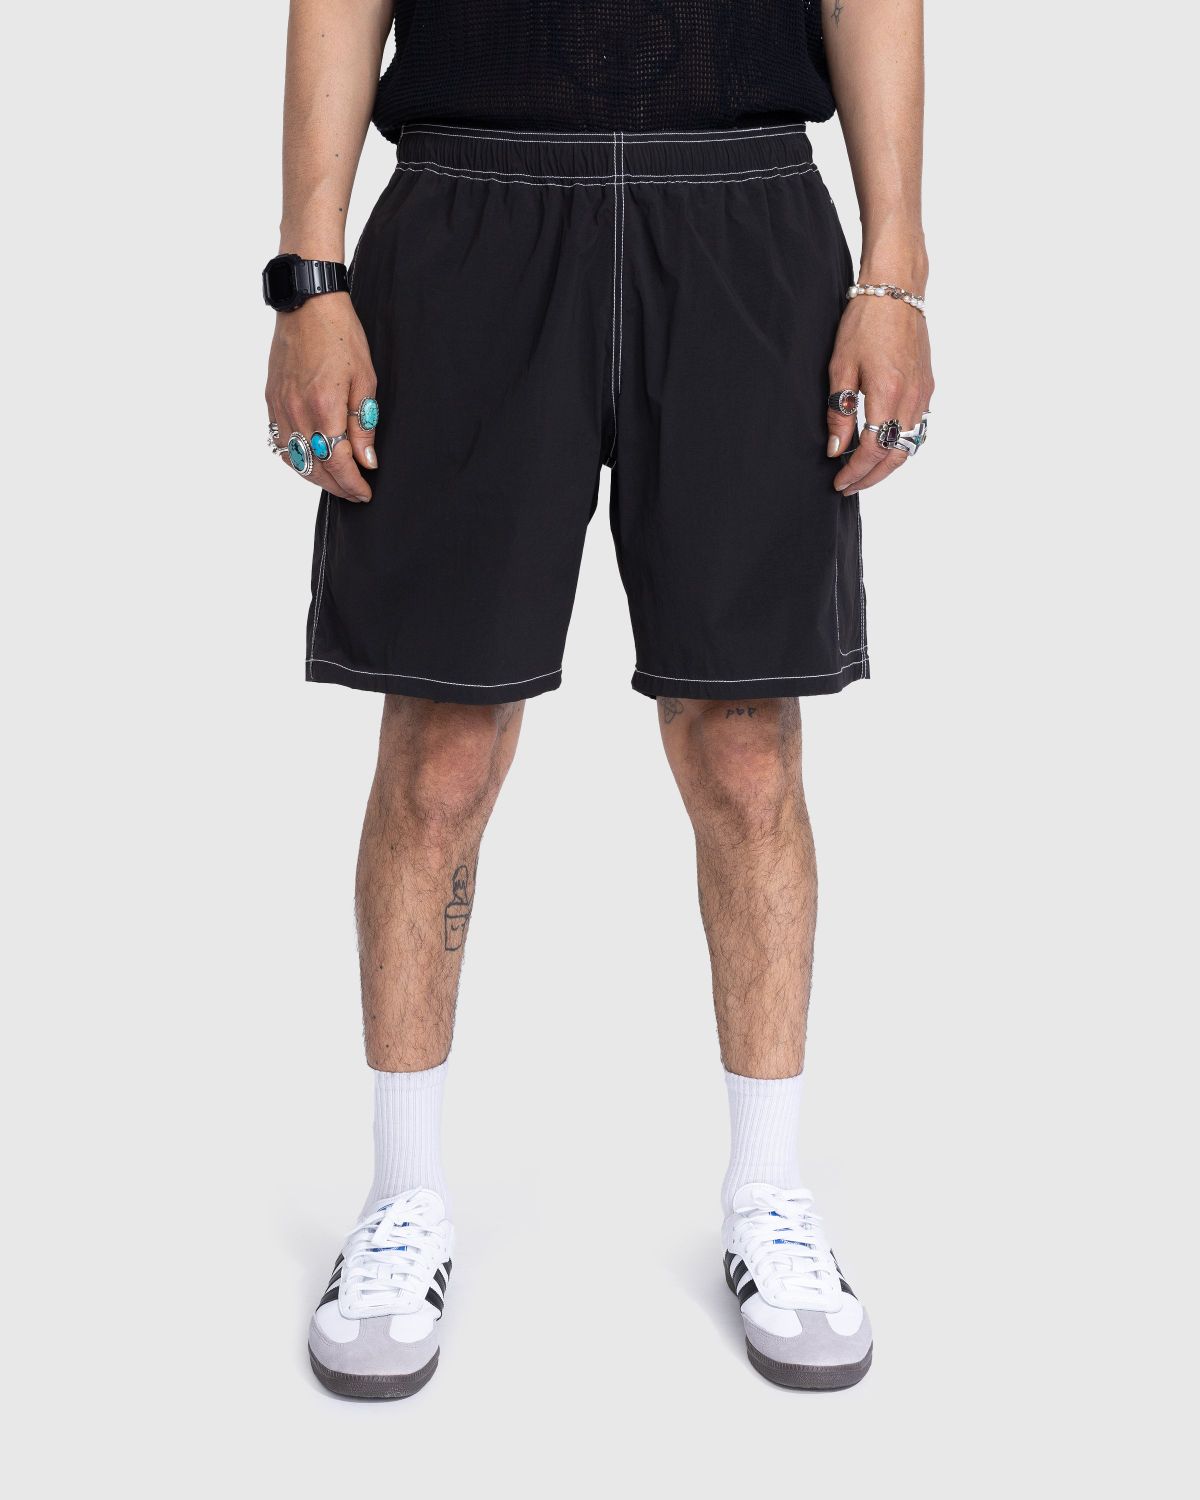 Highsnobiety – Side Cargo Shorts Charcoal Black - Active Shorts - Black - Image 2